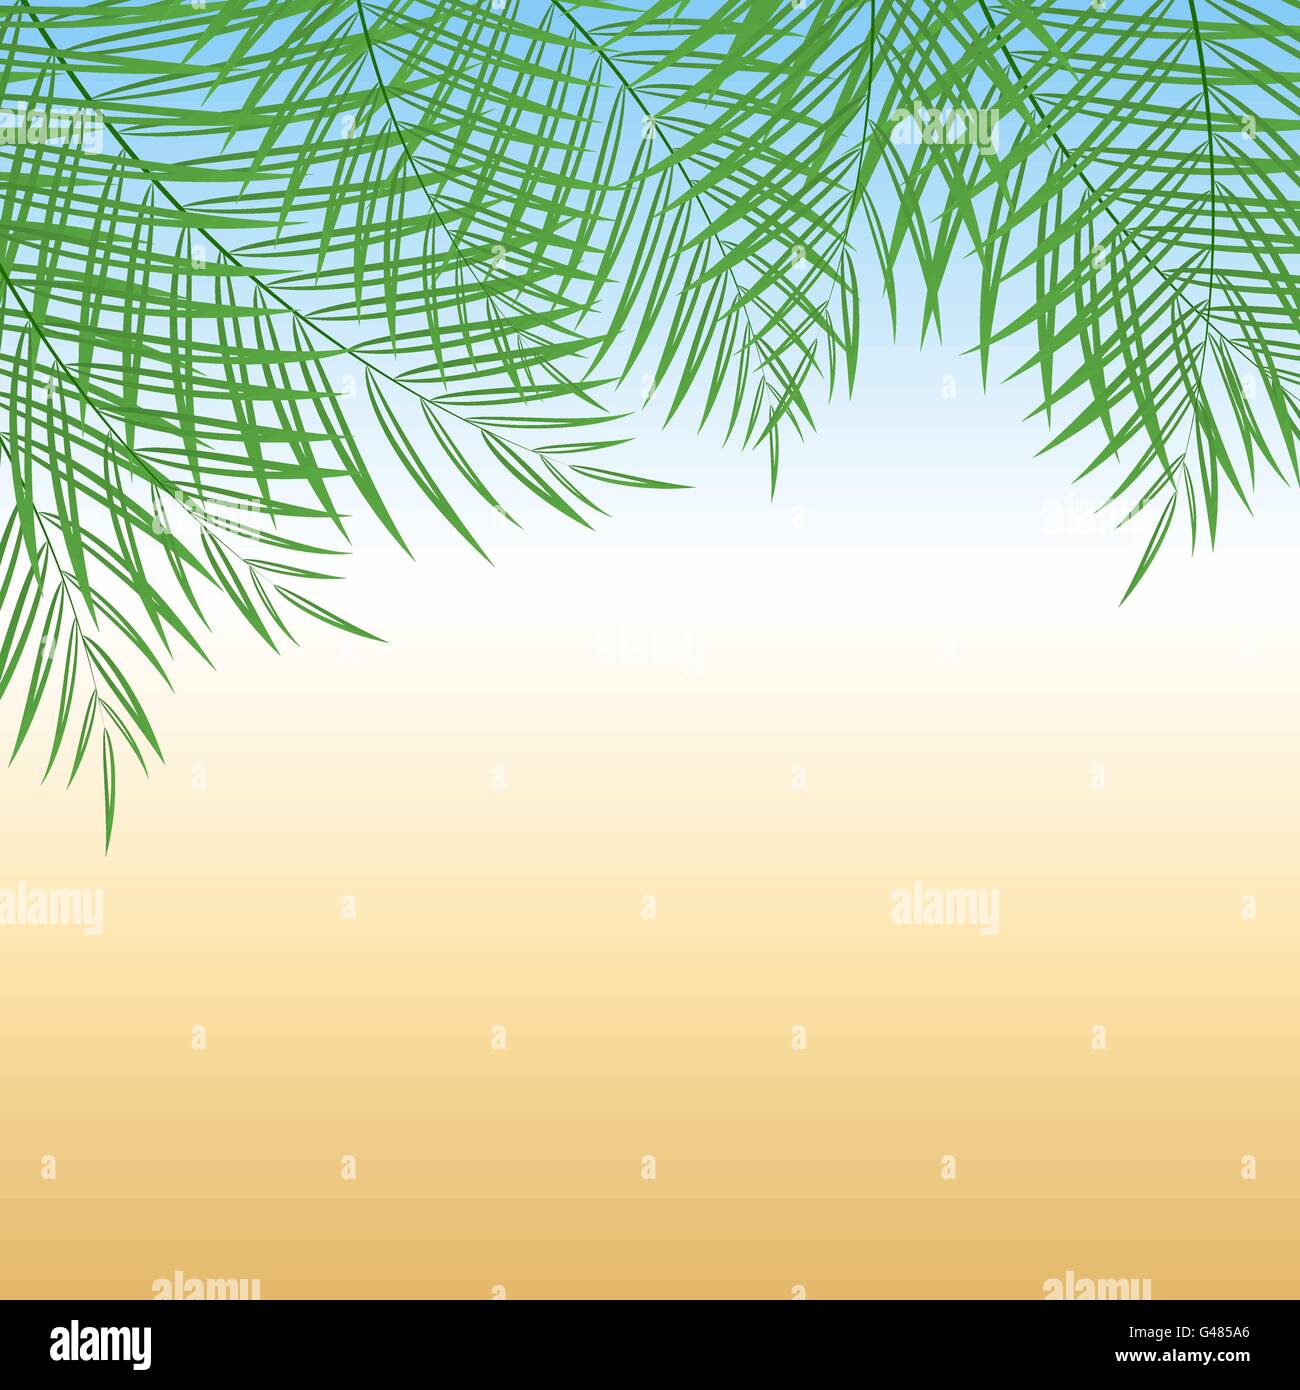 Vektor-Illustration der Palme Blätter über Sommer Hintergrund für Ihr design Stock Vektor